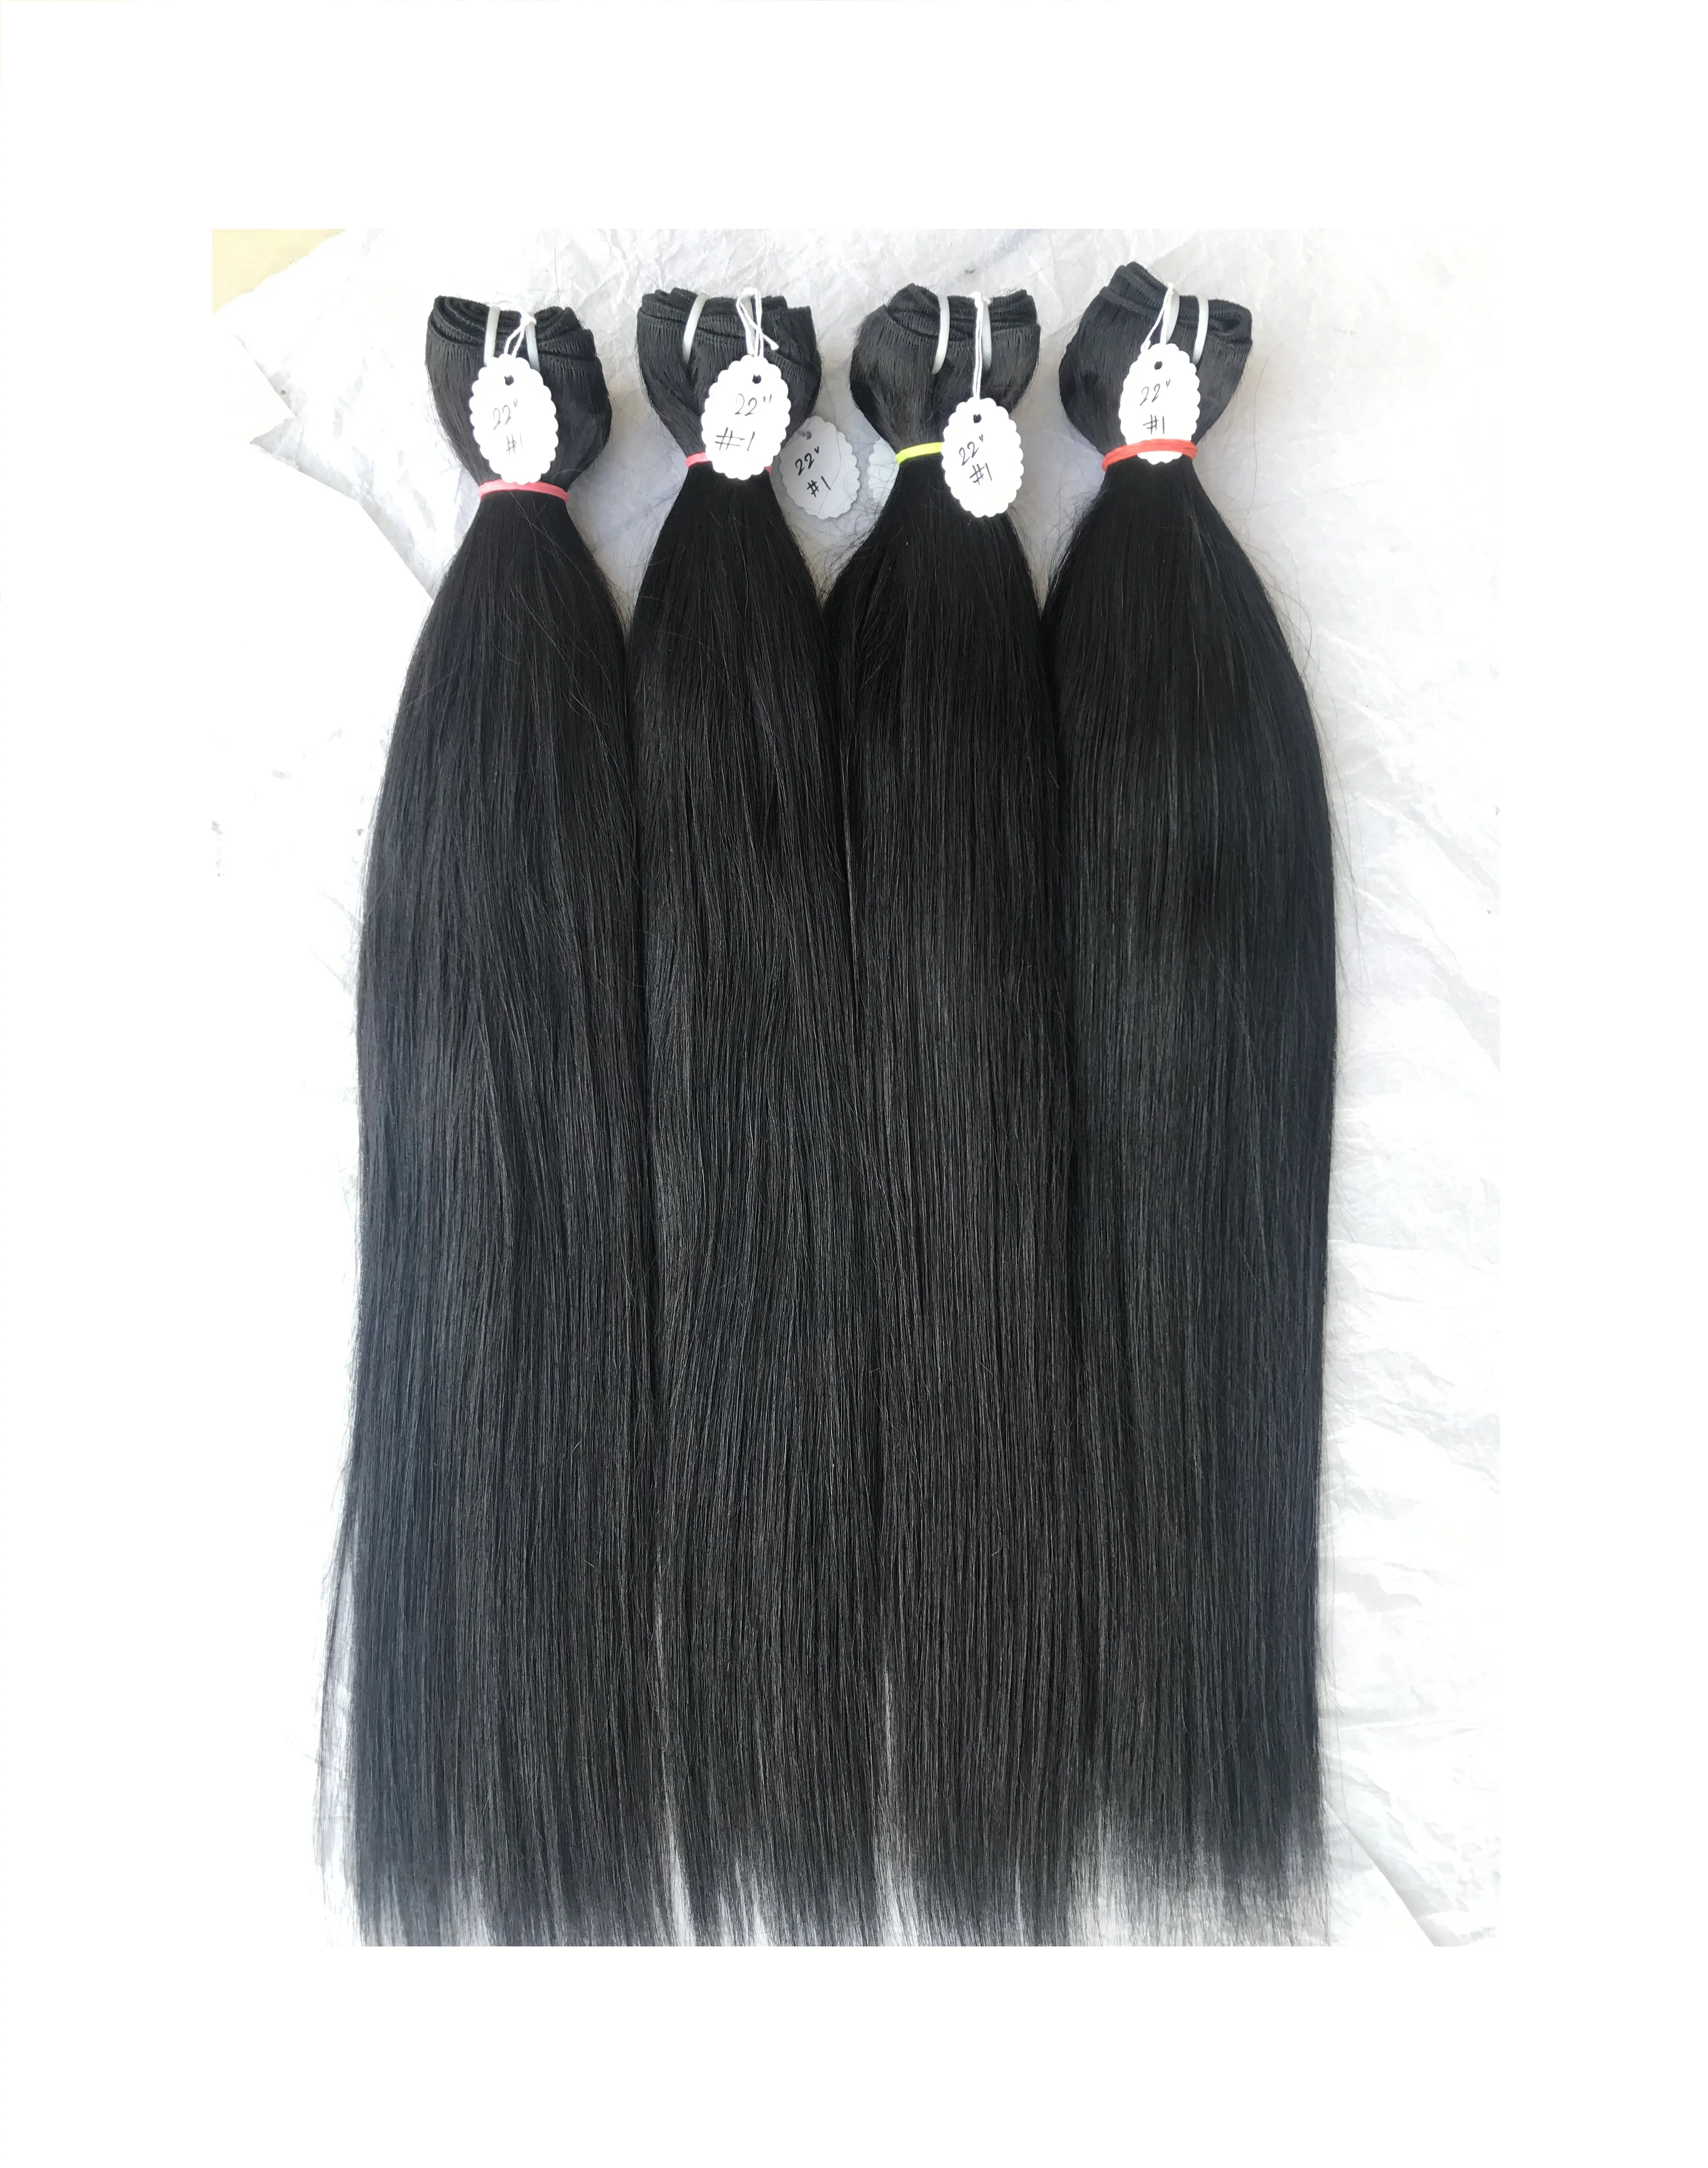 للبيع عبر سلسلة التجزئة من المصنع منتجات أصلية باللون الأسود الطبيعي #1 أنعم مقاس 22 بوصة مستقيمة للنساء من موردي الشعر البشري البرازيلي